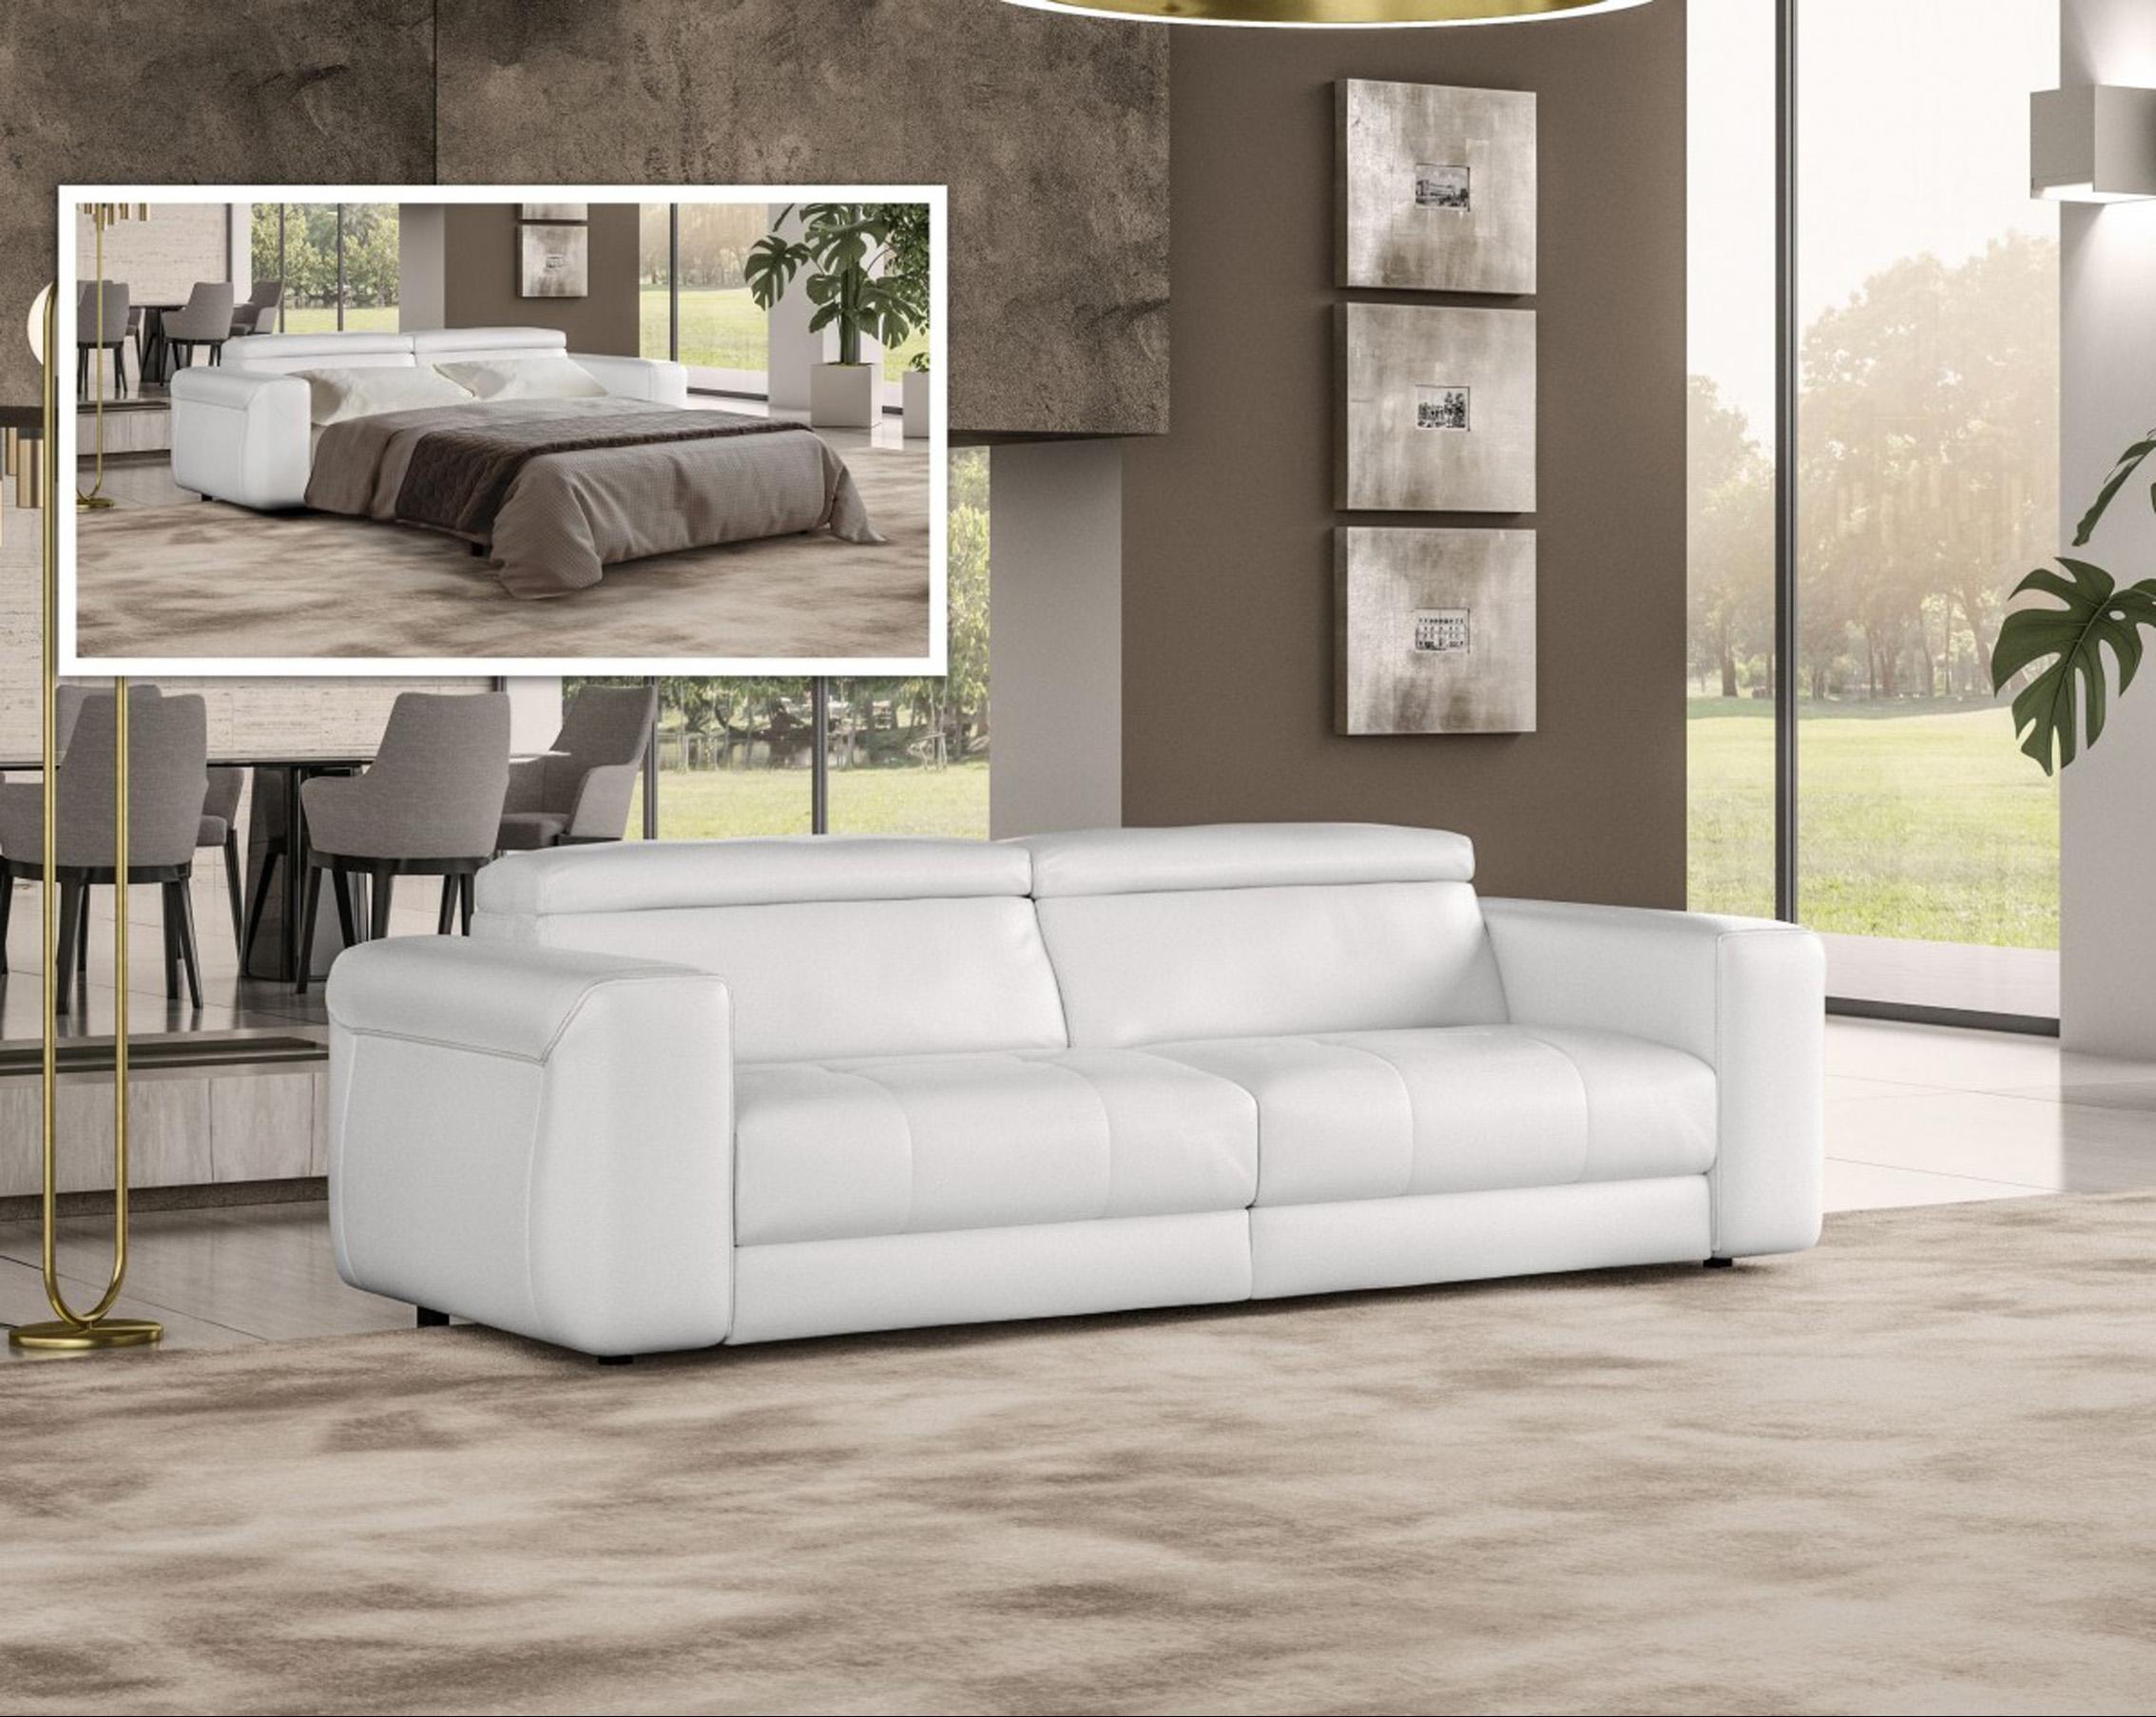 Contemporary, Modern Sofa bed VGCCICON-WHT-SB VGCCICON-WHT-SB in White Italian Leather